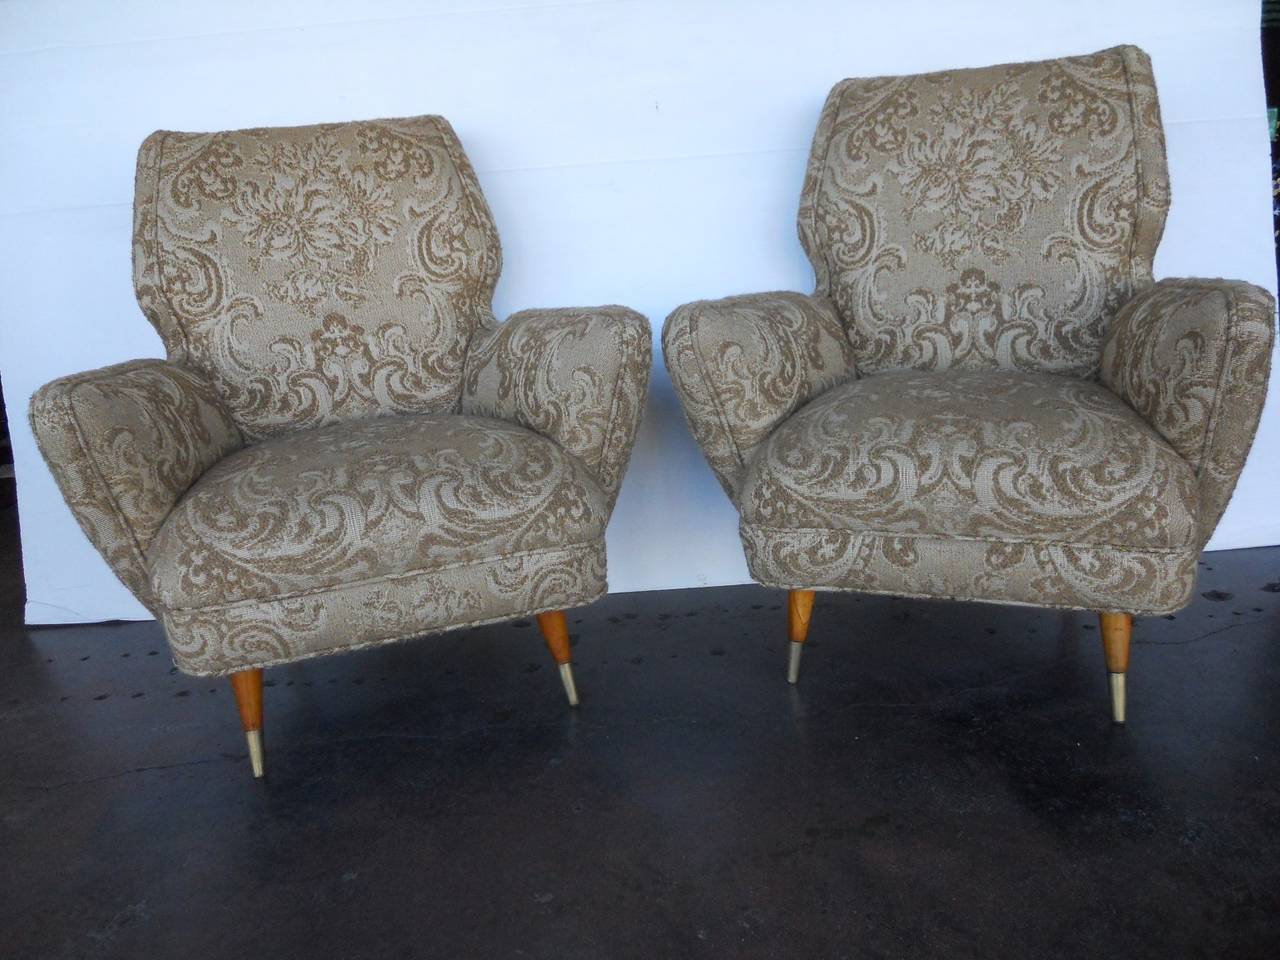 Elegant pair of Giulio Minoletti chairs.
Seat depth 17